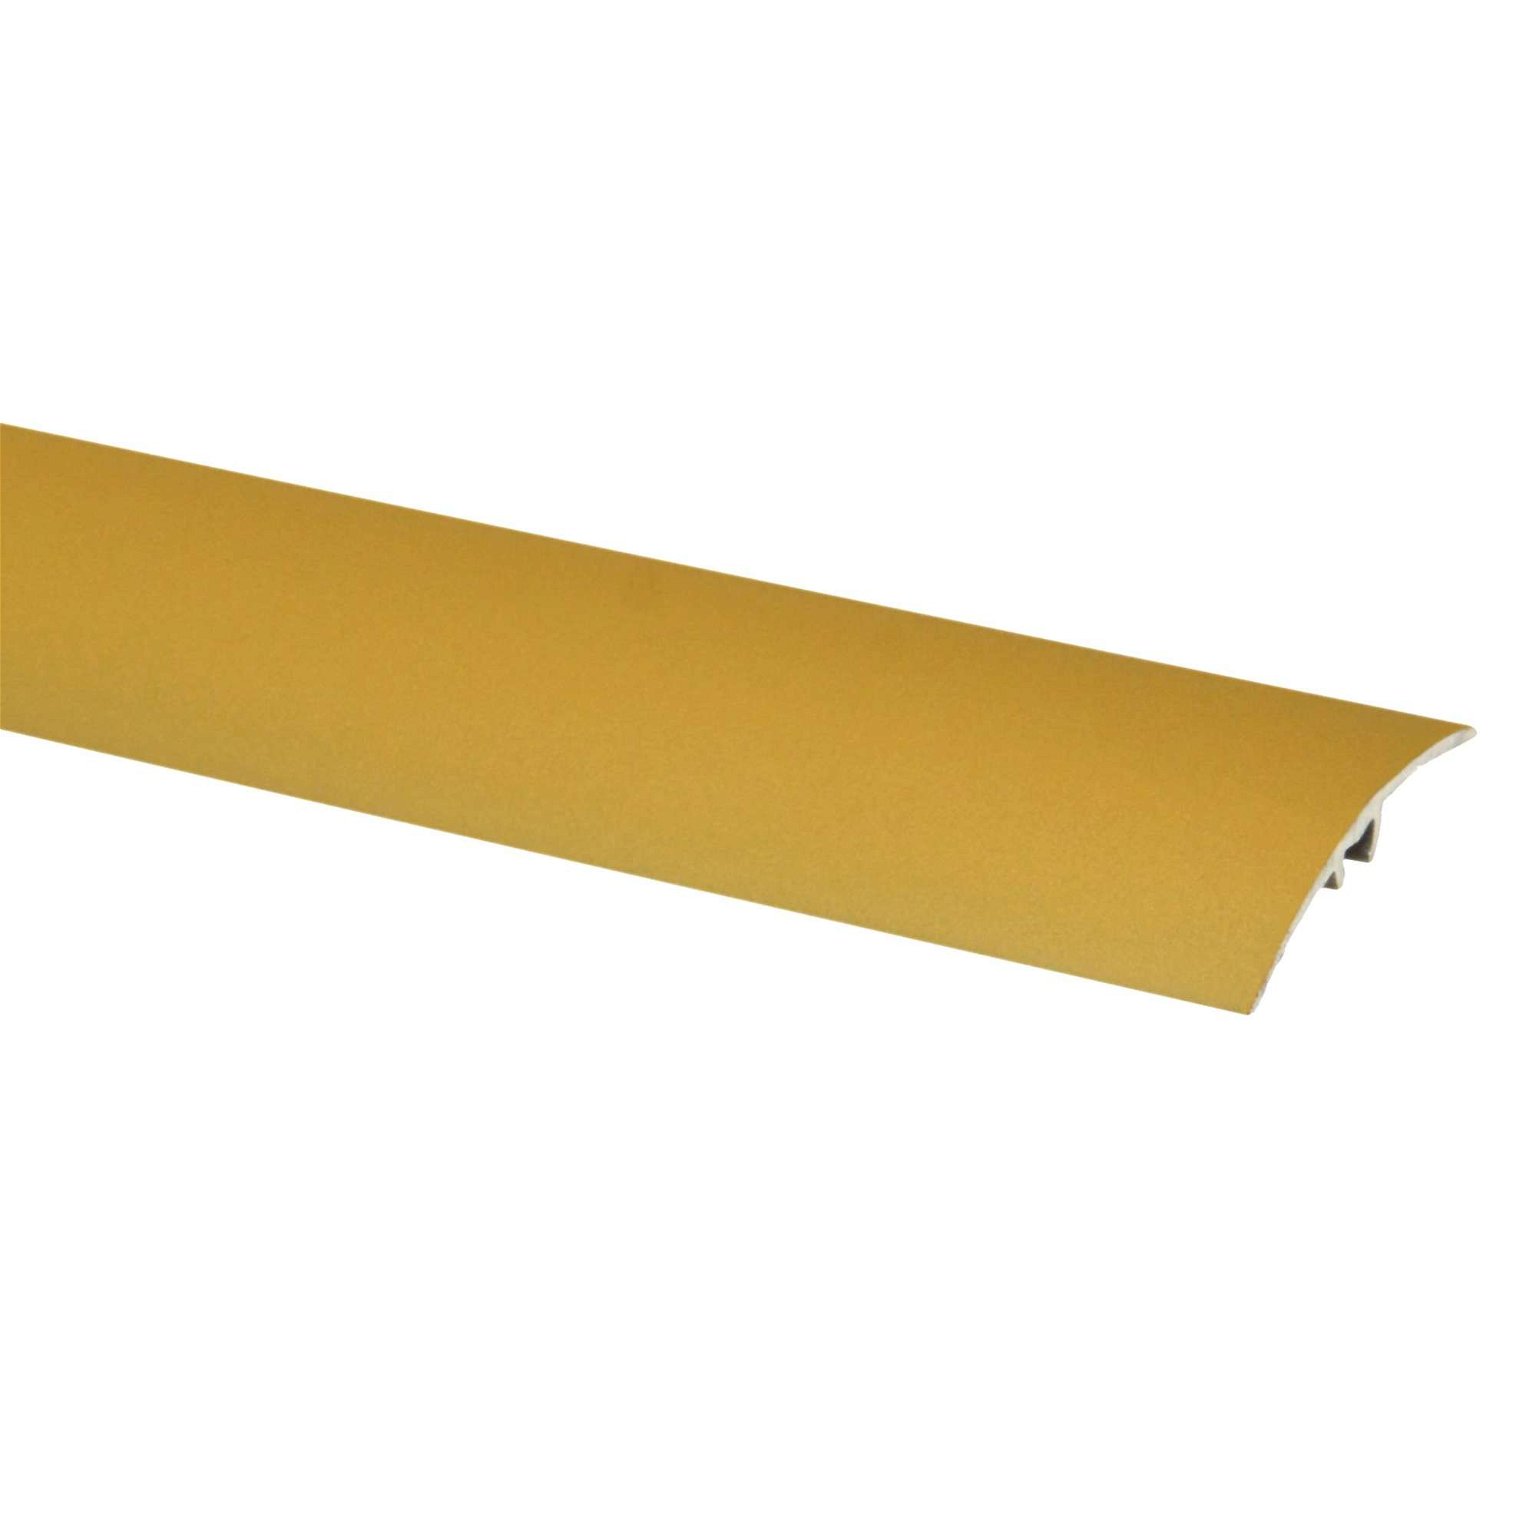 Aliumininė grindų juostelė SM2 W9, auksinio riešuto sp., 41 mm pločio, 186 cm ilgio